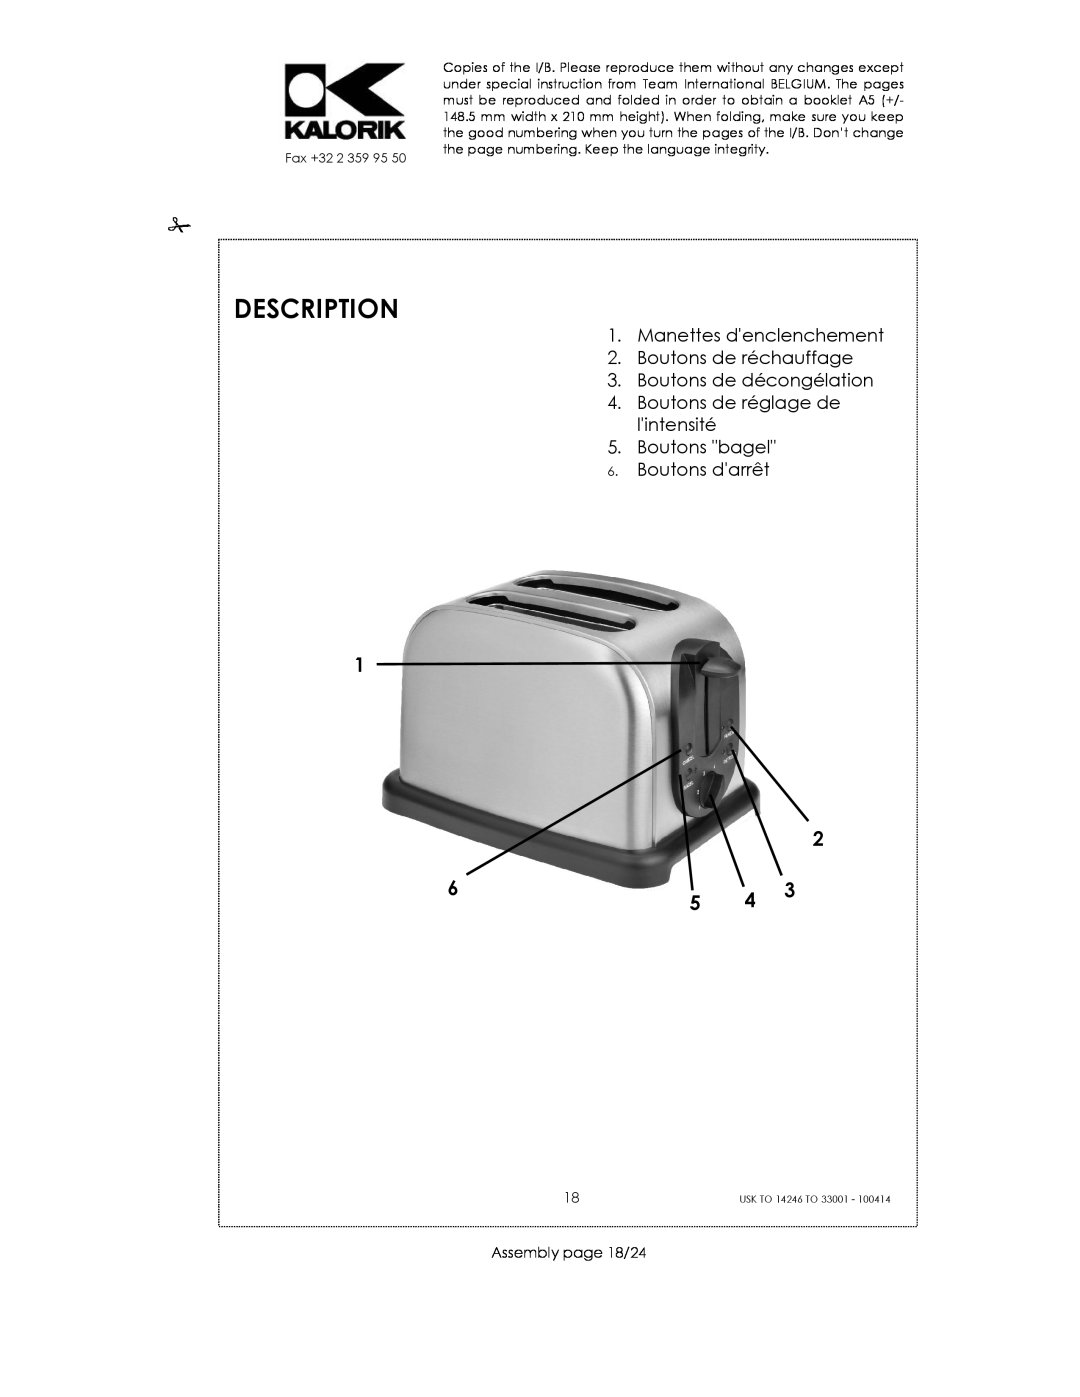 Kalorik 14246 - 33001 manual Description, Manettes denclenchement, Boutons de réchauffage, Boutons de décongélation 